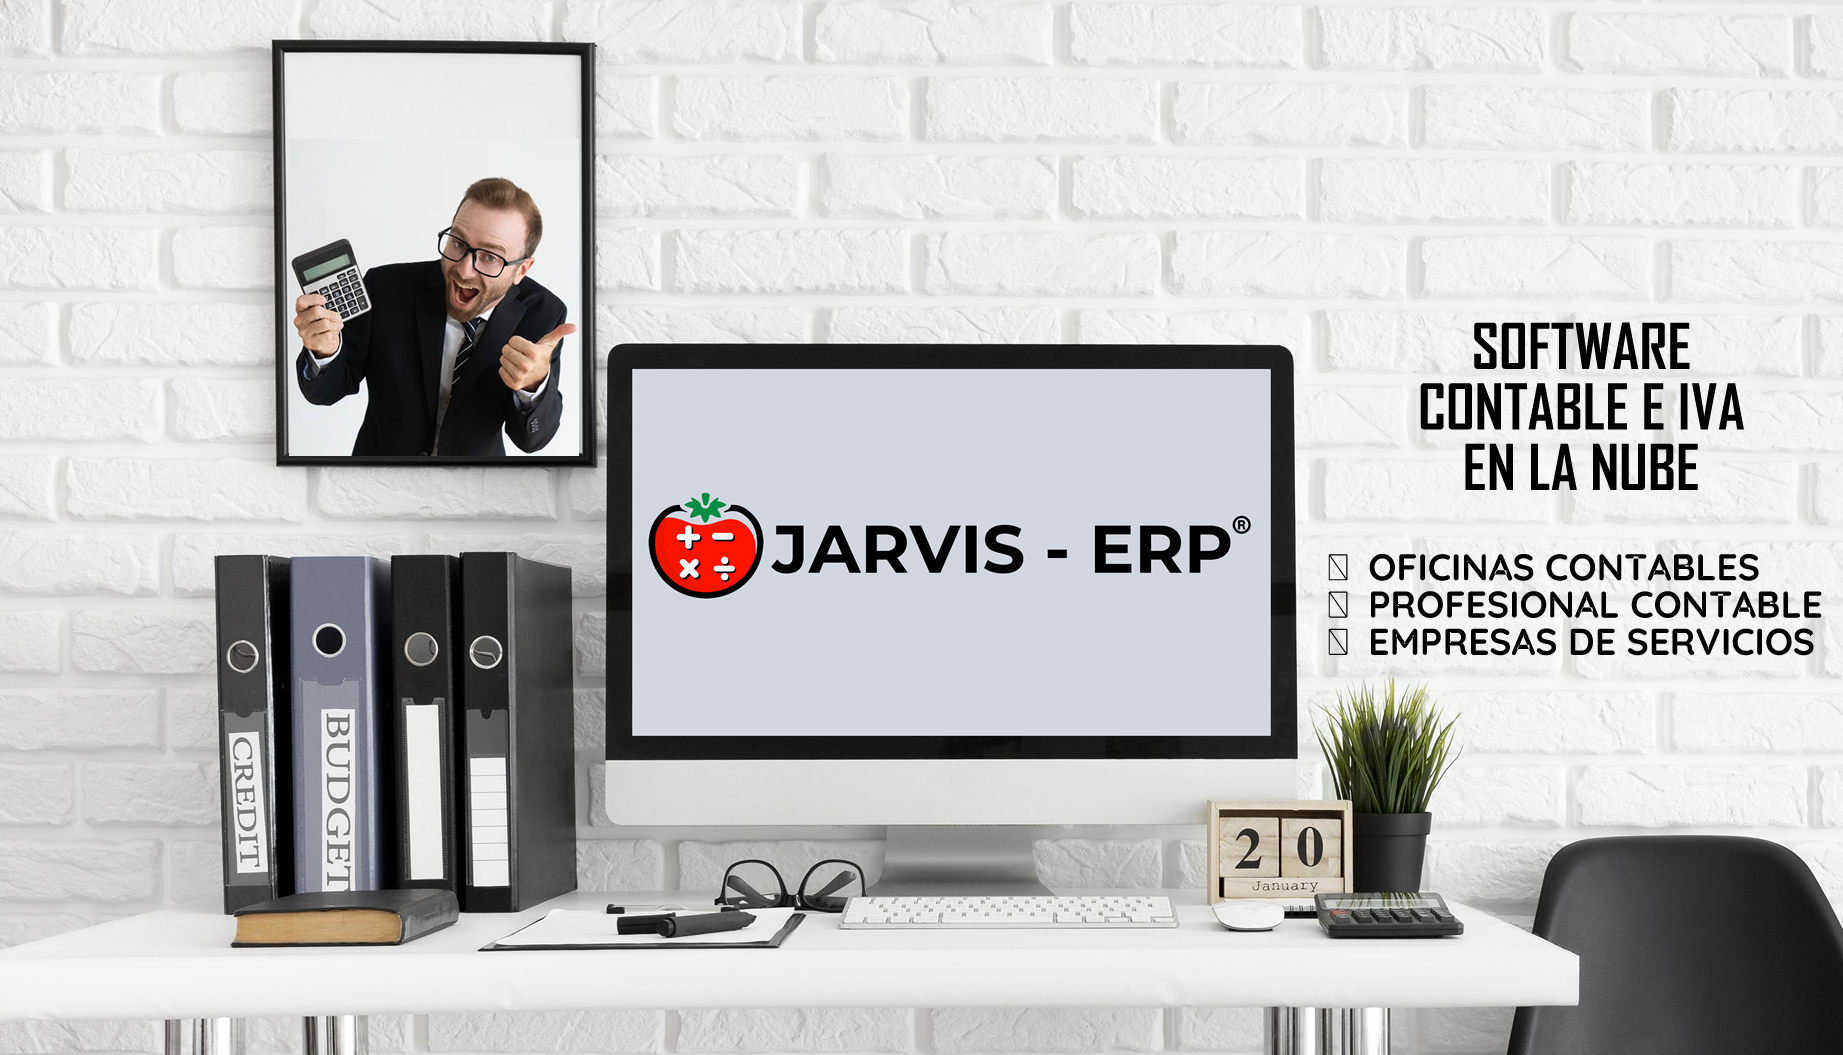 JARVIS – ERP Contamos con el mejor Sistema ERP de IVA y contabilidad (Software ERP Contable) diseñado para pequeñas y medianas entidades de El Salvador, en base a las NIIF / PYMES, como una herramienta para optimizar el funcionamiento de tu negocio y potenciarlo en una misma plataforma en la nube. En El Salvador.